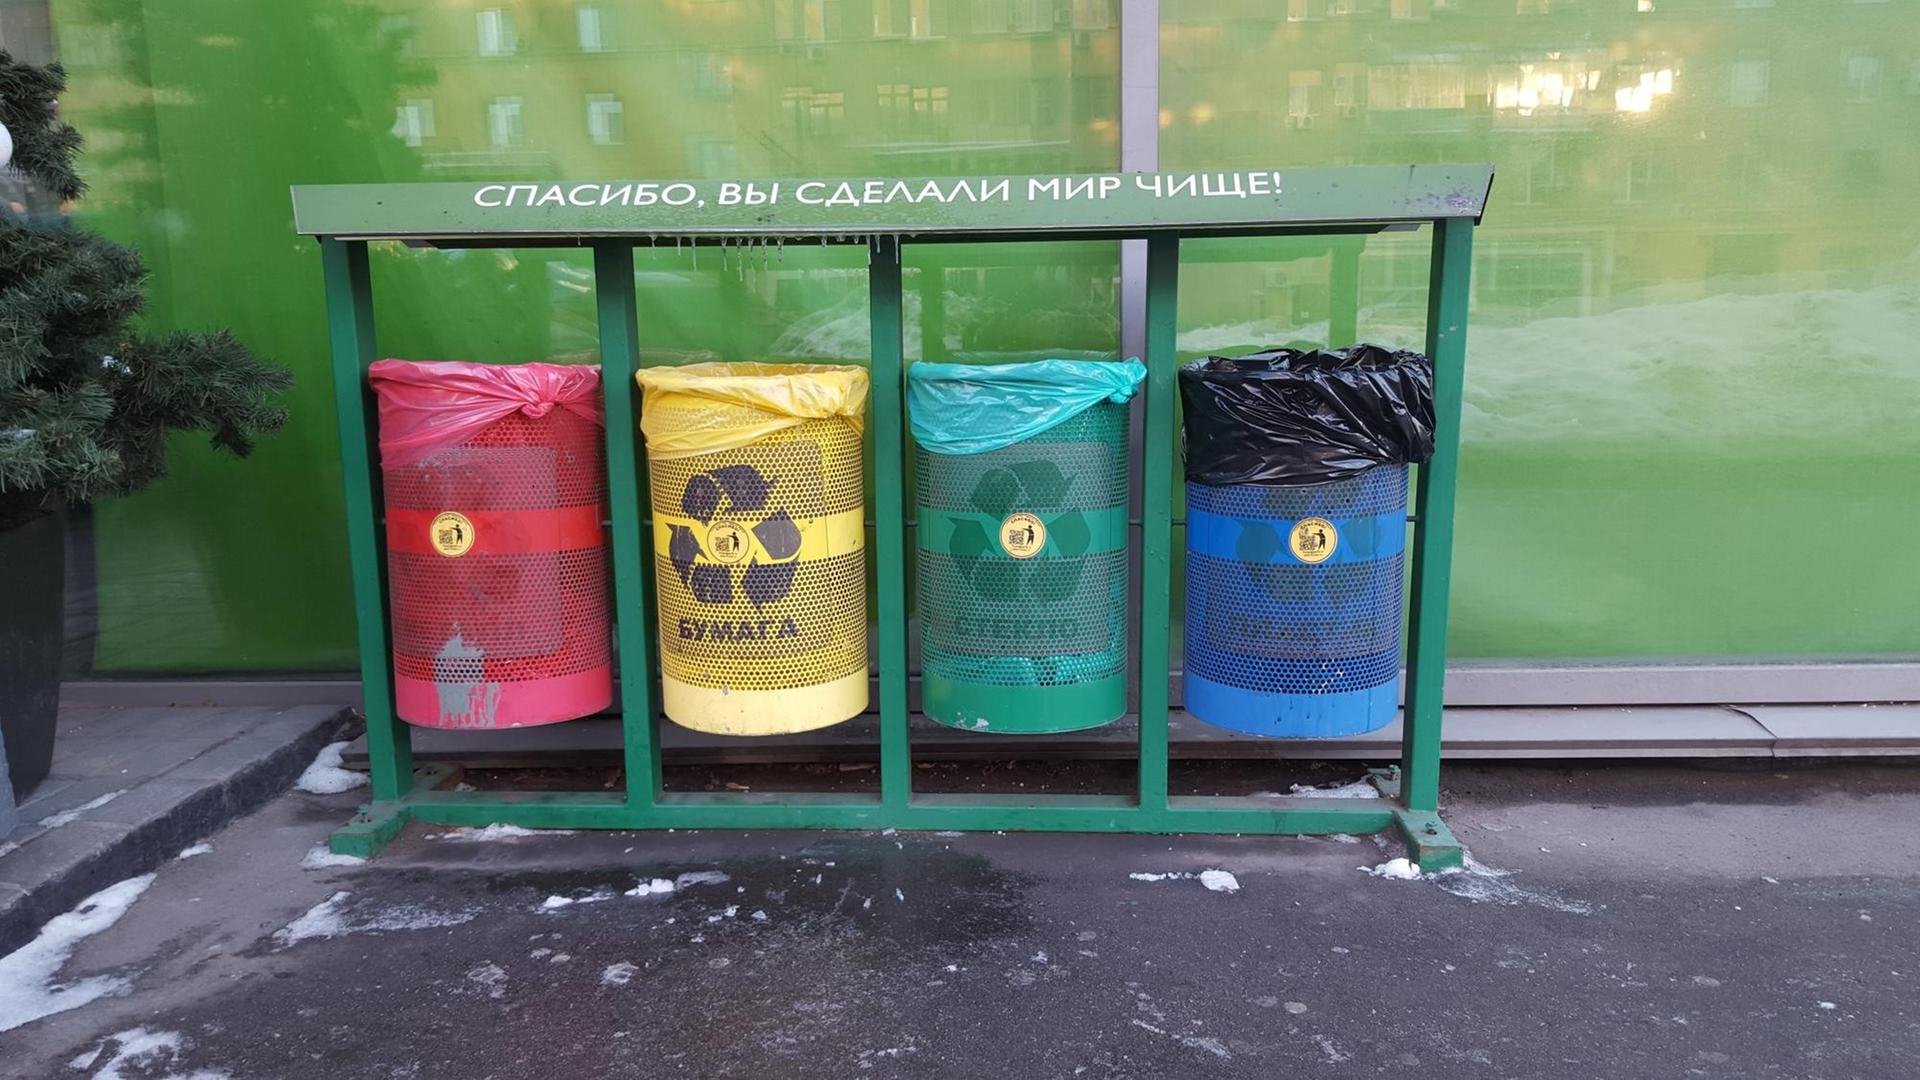 Mülltrennung in Moskau vor einem Supermarkt, bald soll es mehr davon geben.